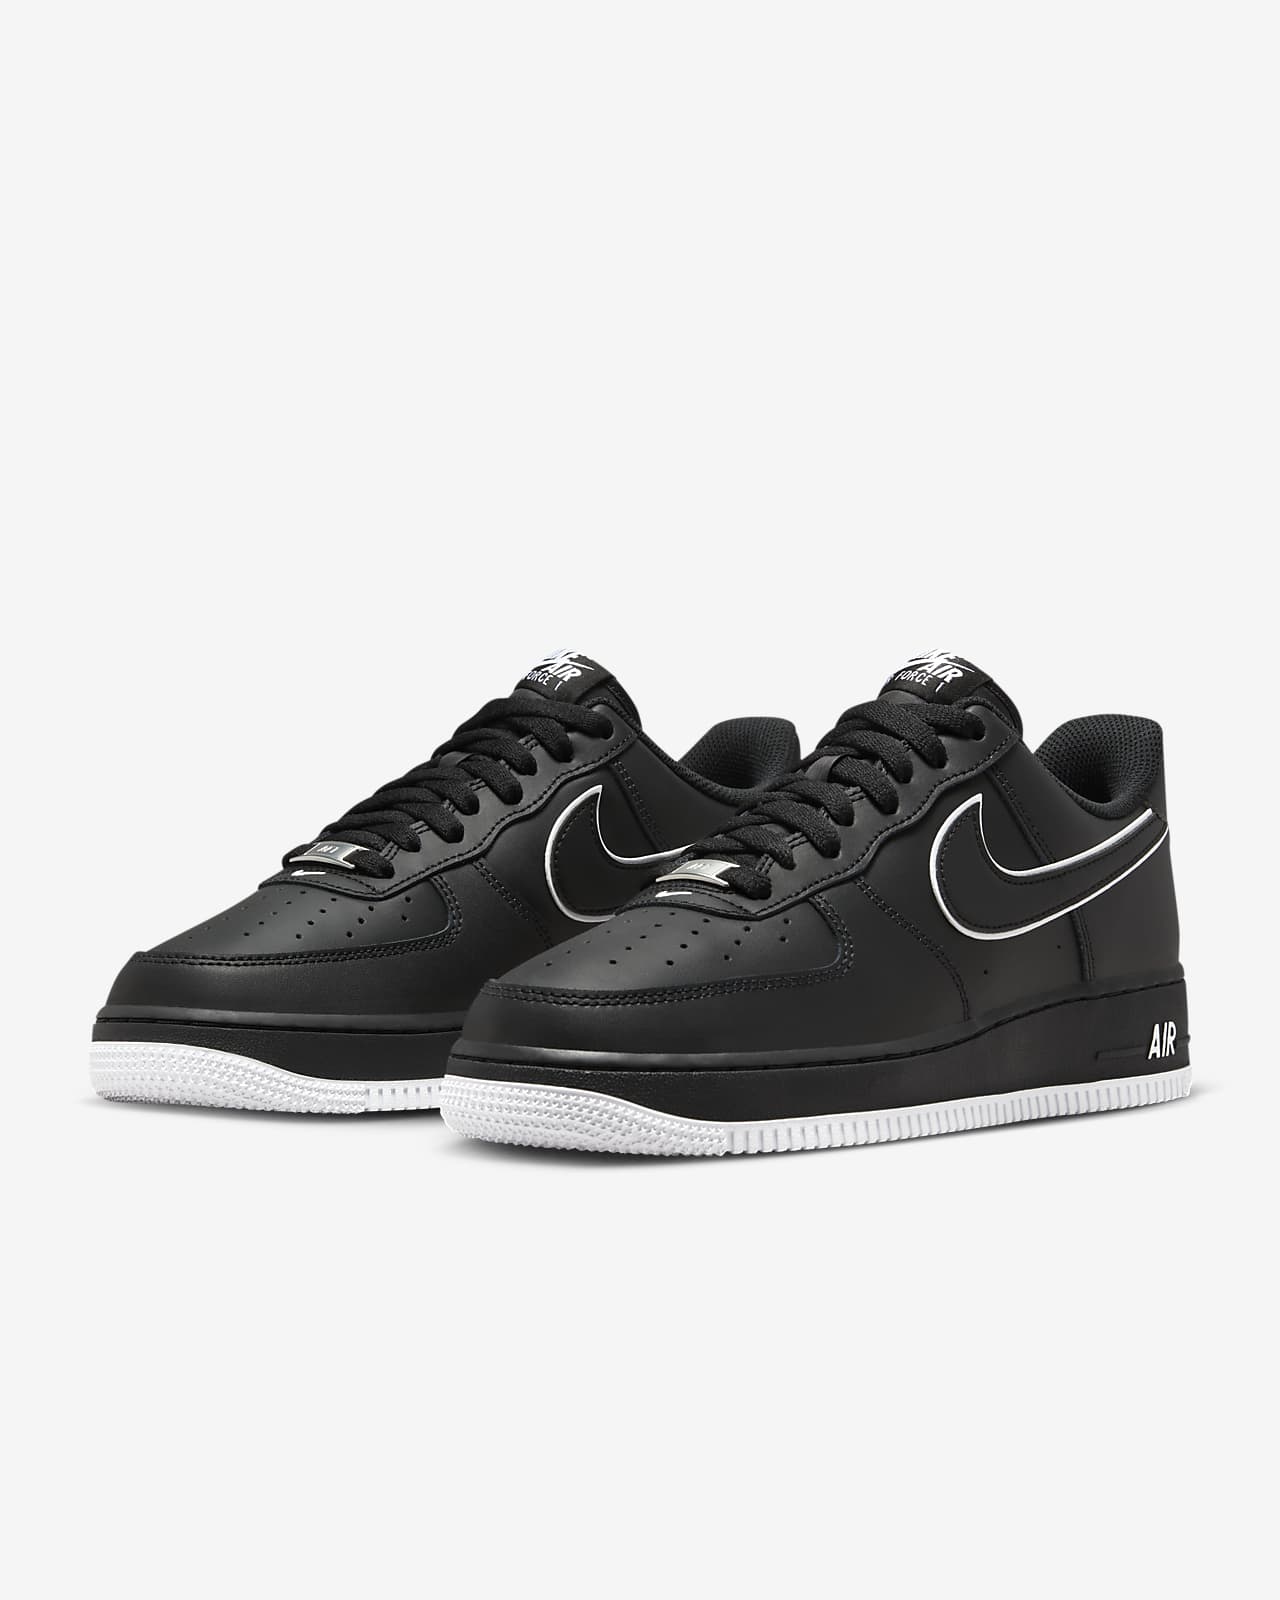 Nike Air Force 1 07 Low Shoes White Black Panda Men's DV0788